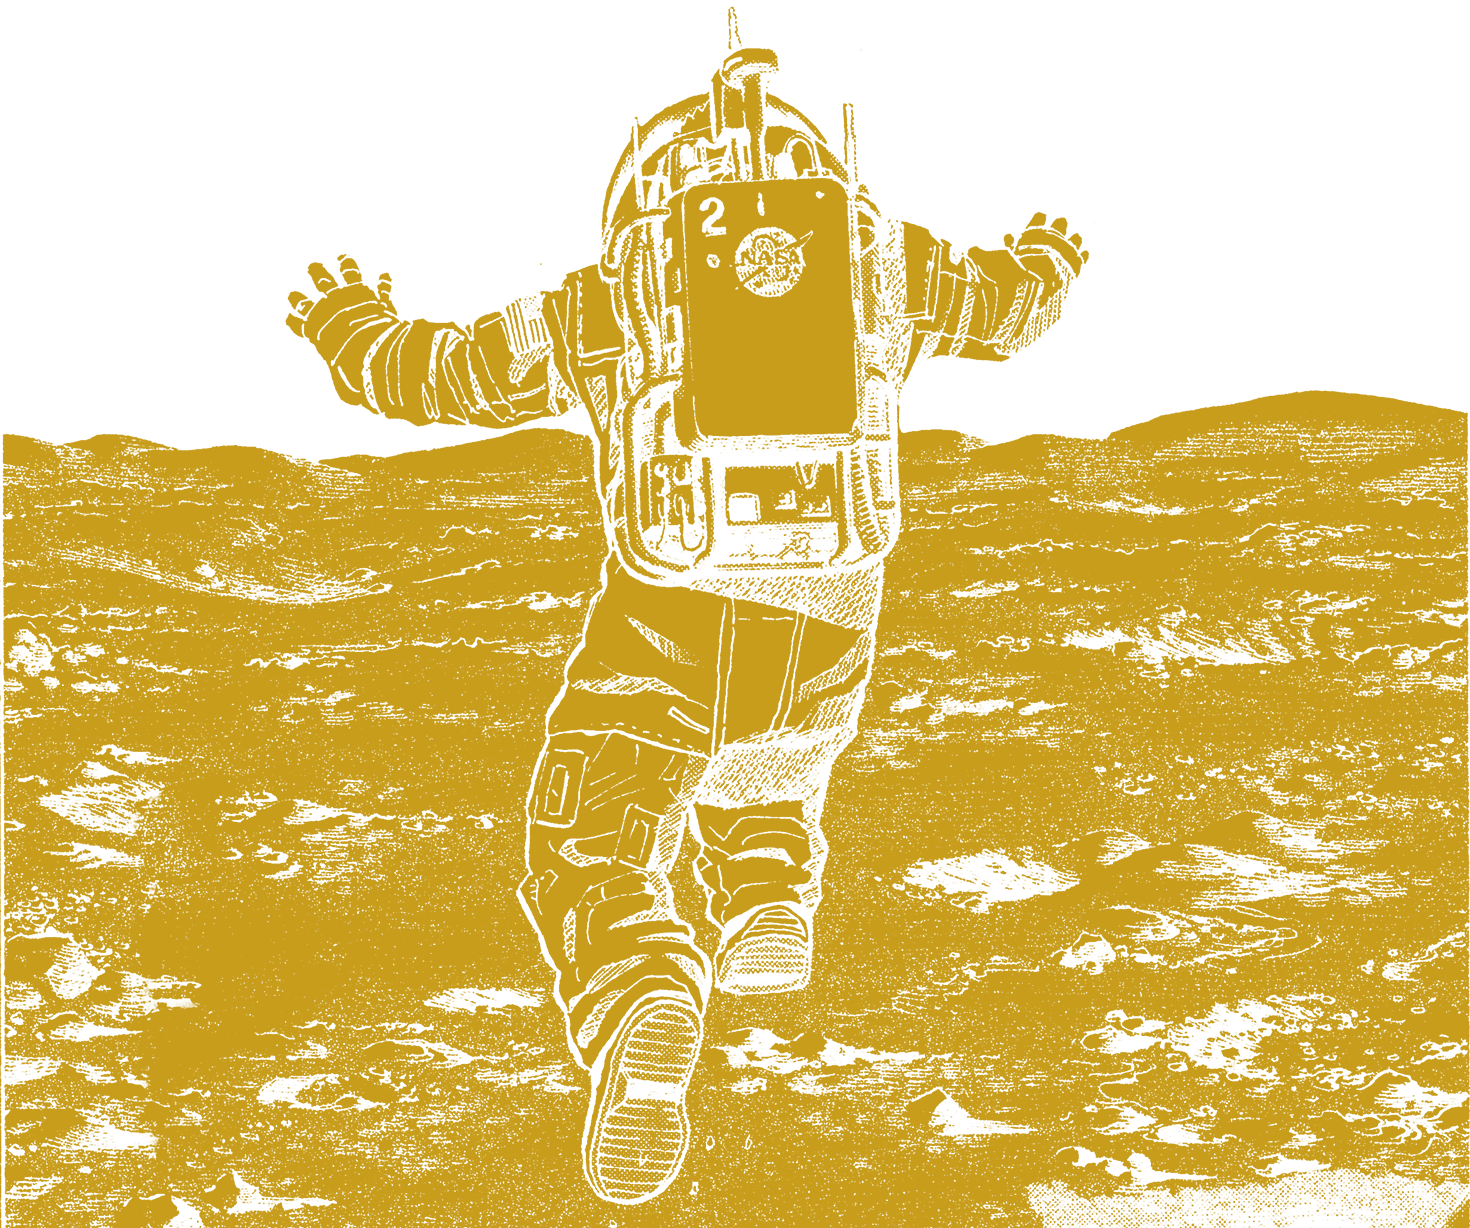 無料公開も 宇宙兄弟オールカラー版がlineマンガに登場 7 19 7 25に無料キャンペーン実施 月面着陸50周年記念サイト Powered By 宇宙兄弟